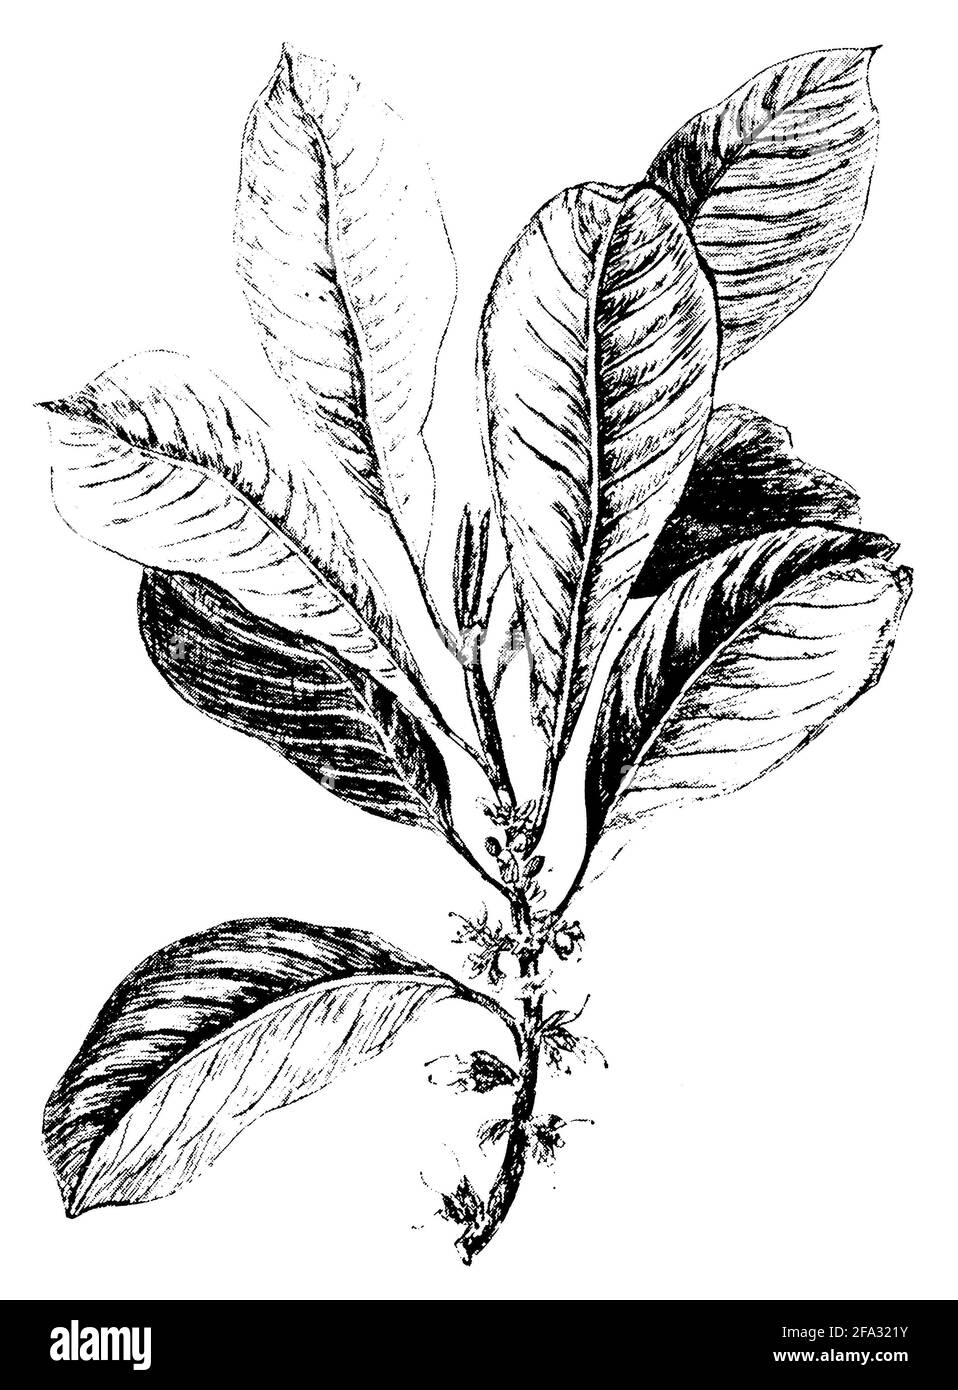 Palaquium gutta / Palaquium gutta / Guttaperchabaum (botany book, 1907) Stock Photo